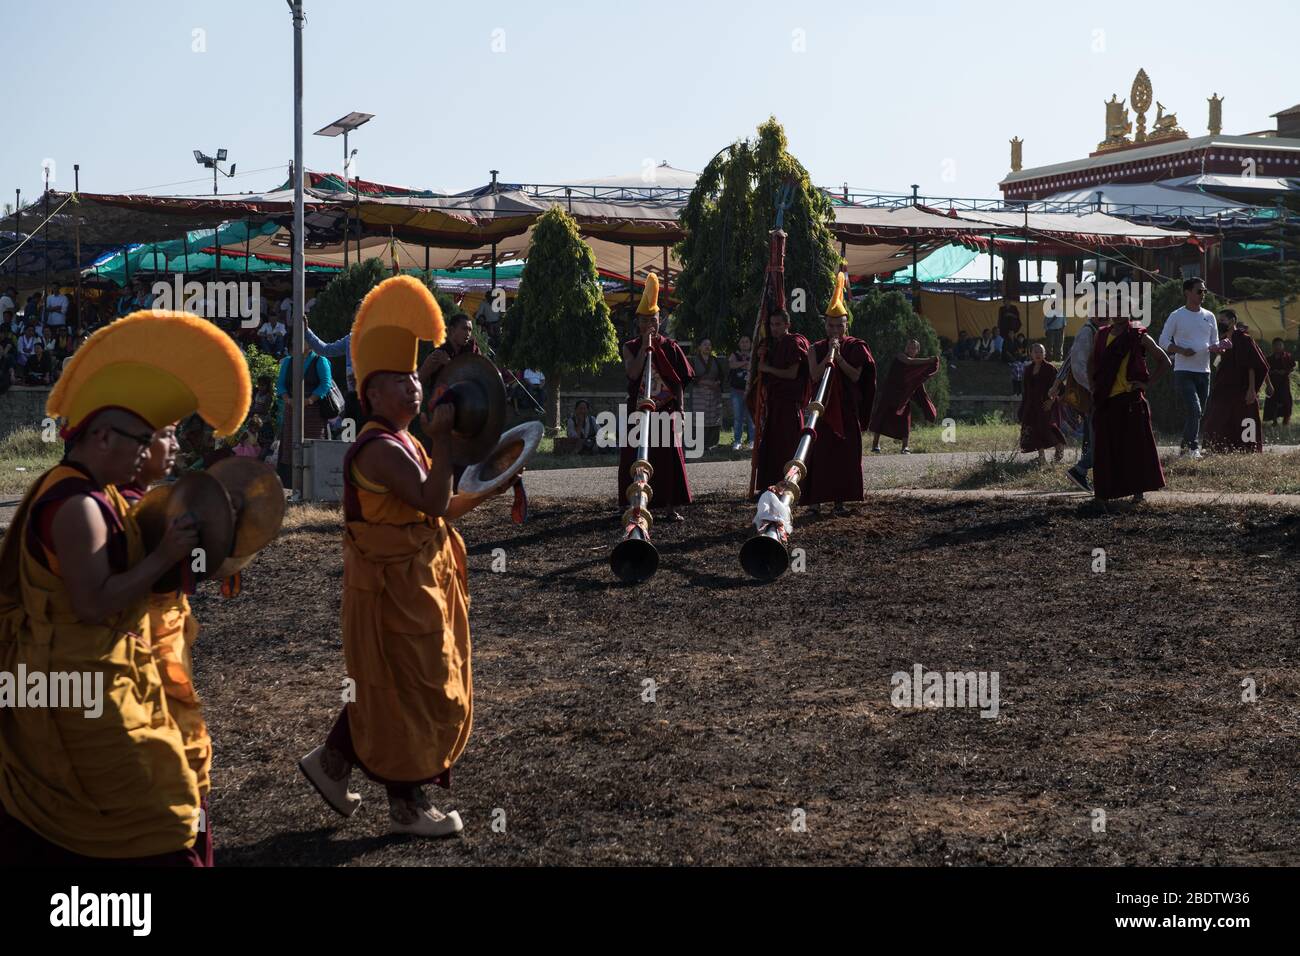 Cornes tibétaines et Chapeaux jaunes de Gelupa pendant la danse Cham, jouées pendant le Losar (nouvel an tibétain) dans la colonie tibétaine de Gurupura, Karnataka, Inde. Banque D'Images